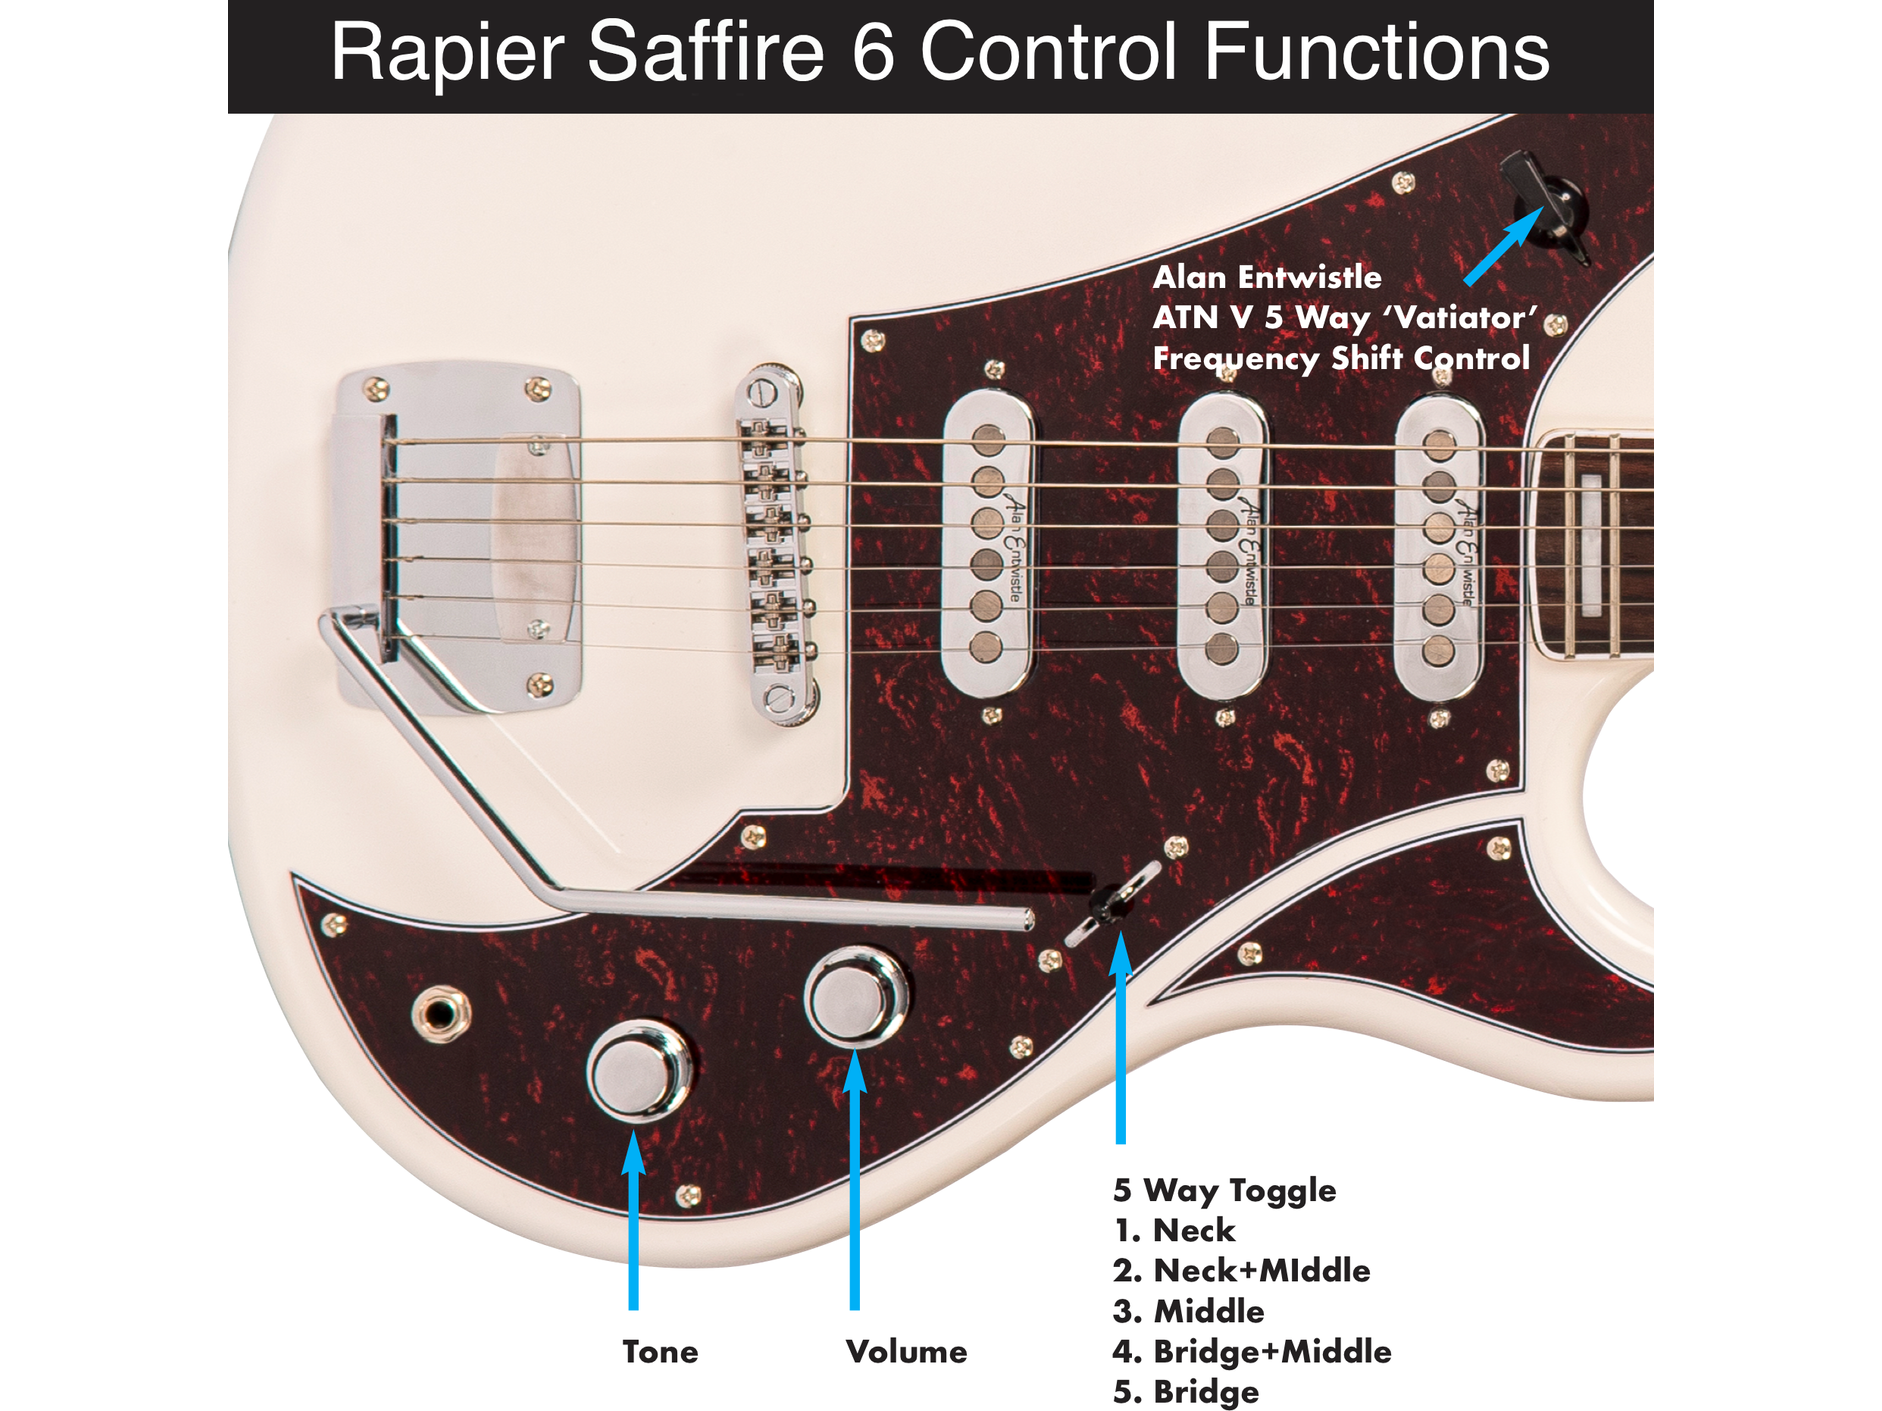 Rapier Saffire Electric Guitar in Vintage White *B STOCK*